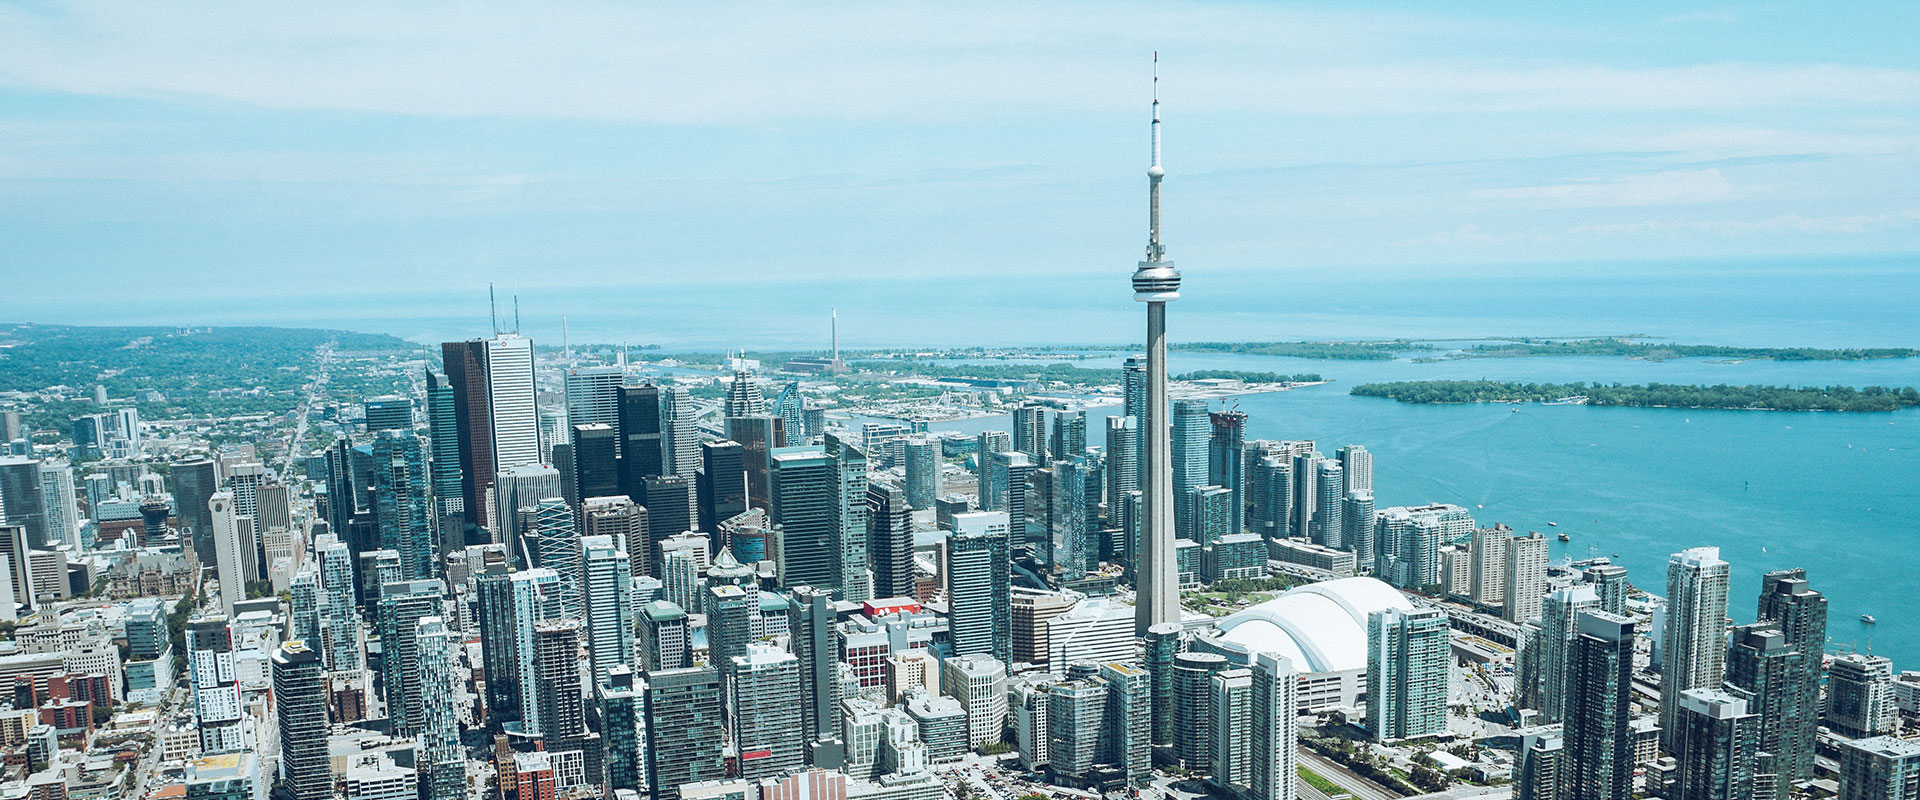 Mid Rise Condos - Toronto's Neighbourly Buildings